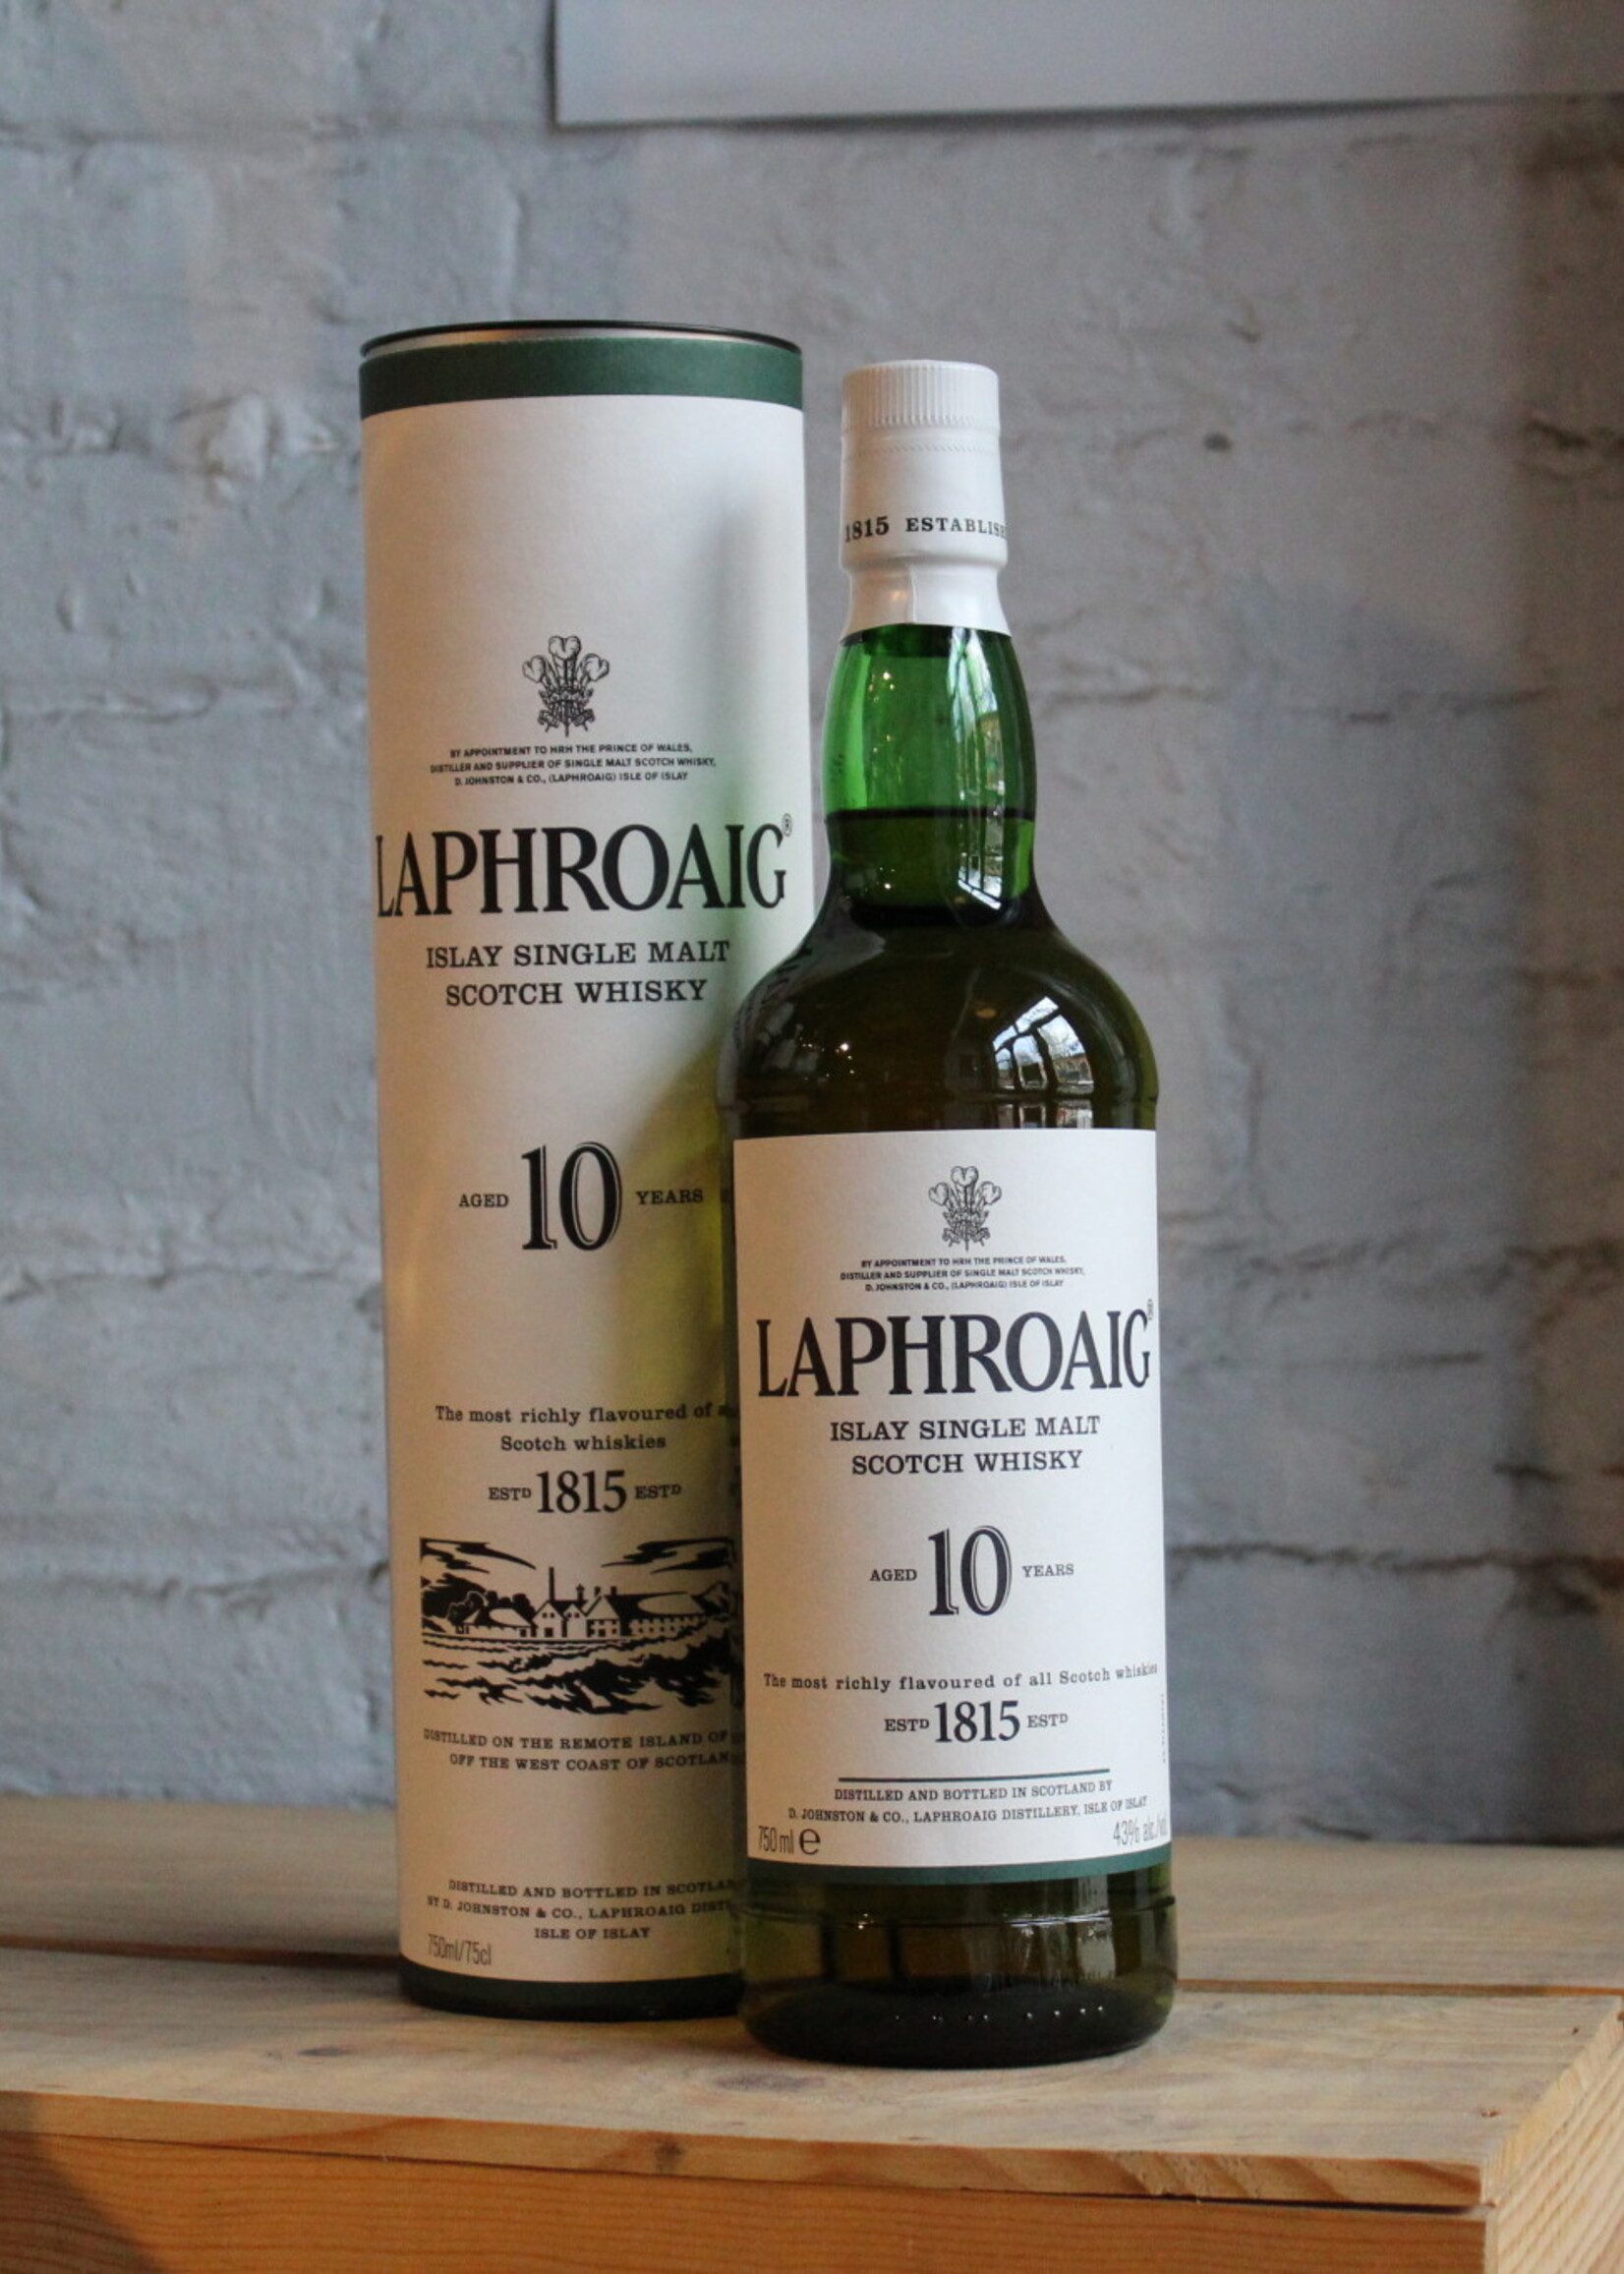 Laphroaig 10yr Single Malt Scotch Whisky - Islay, Scotland (750ml)